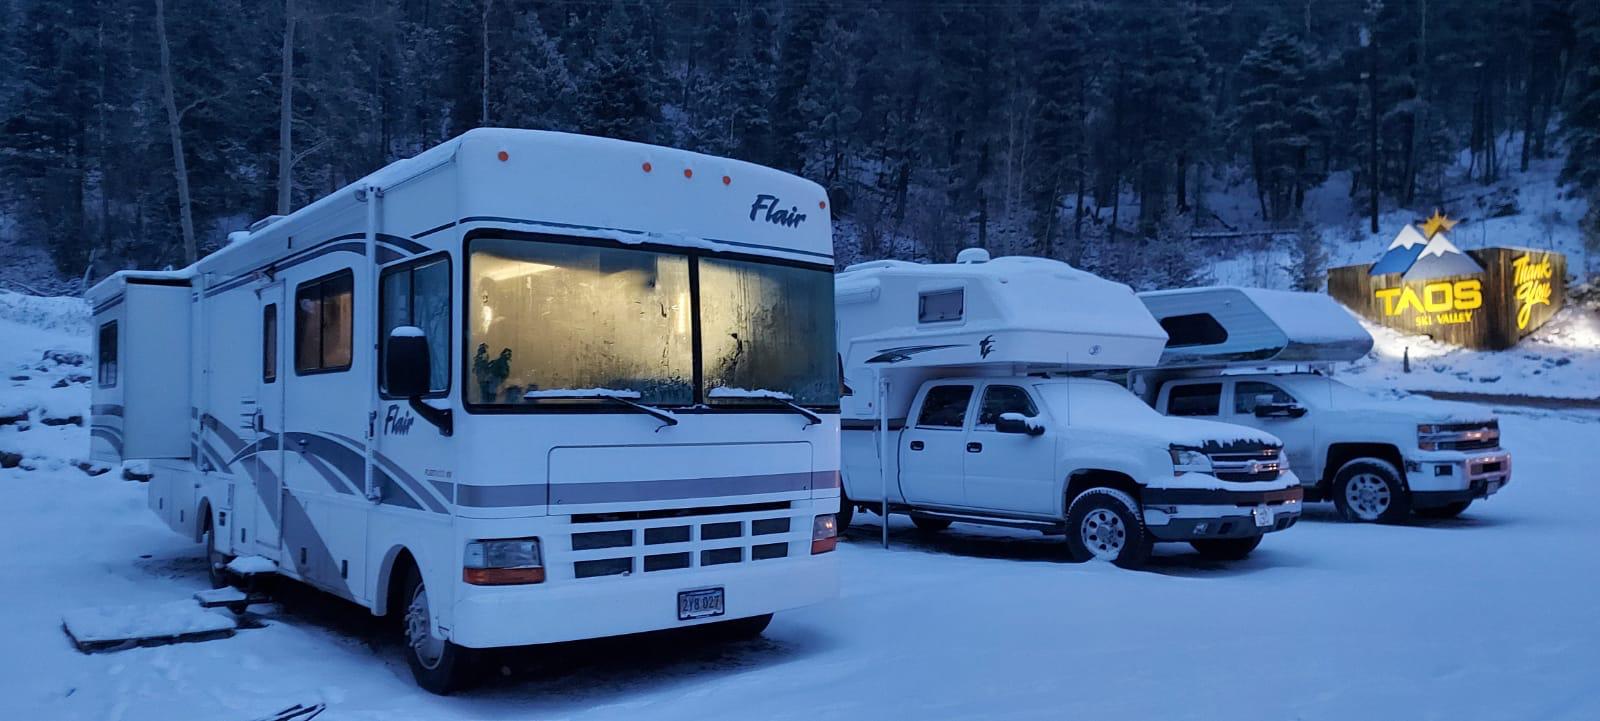 Taos ski resort RV camping